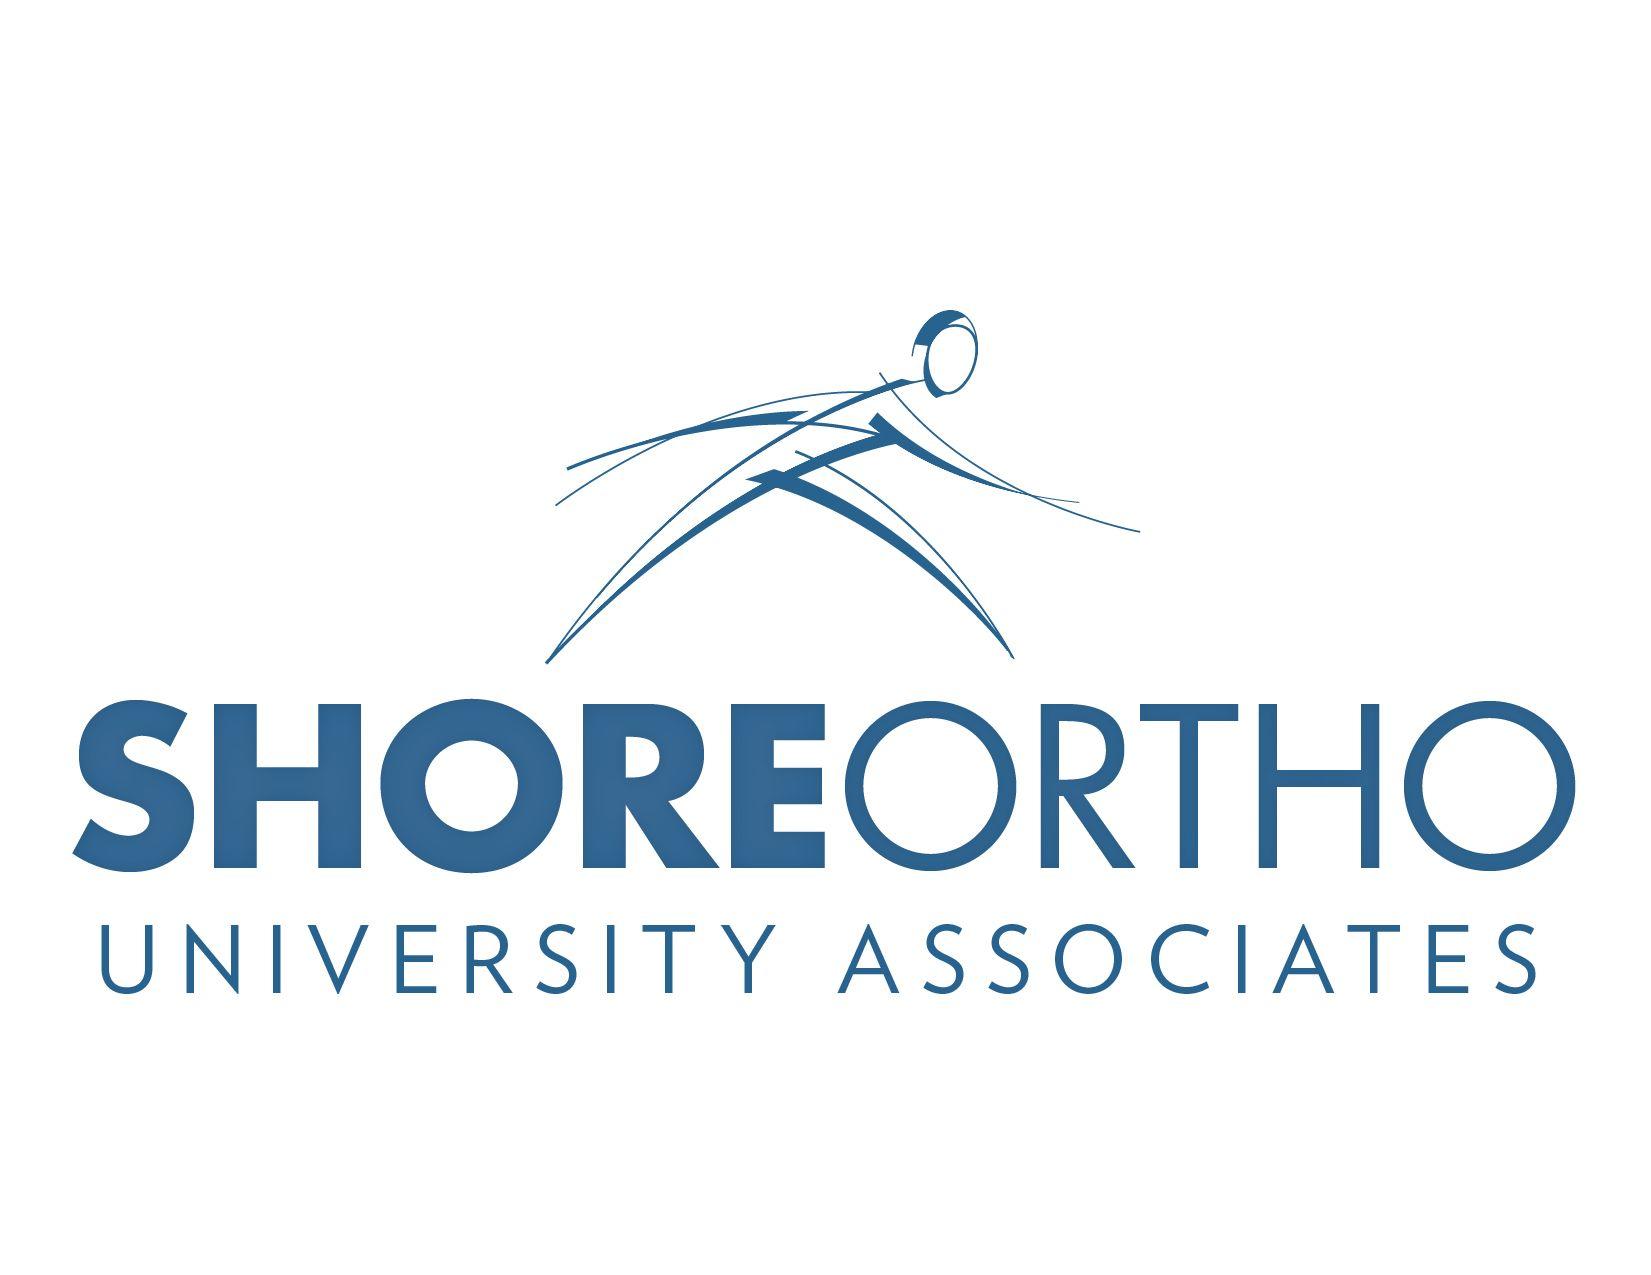 Ortho Logo - Shore Orthopaedic University Associates